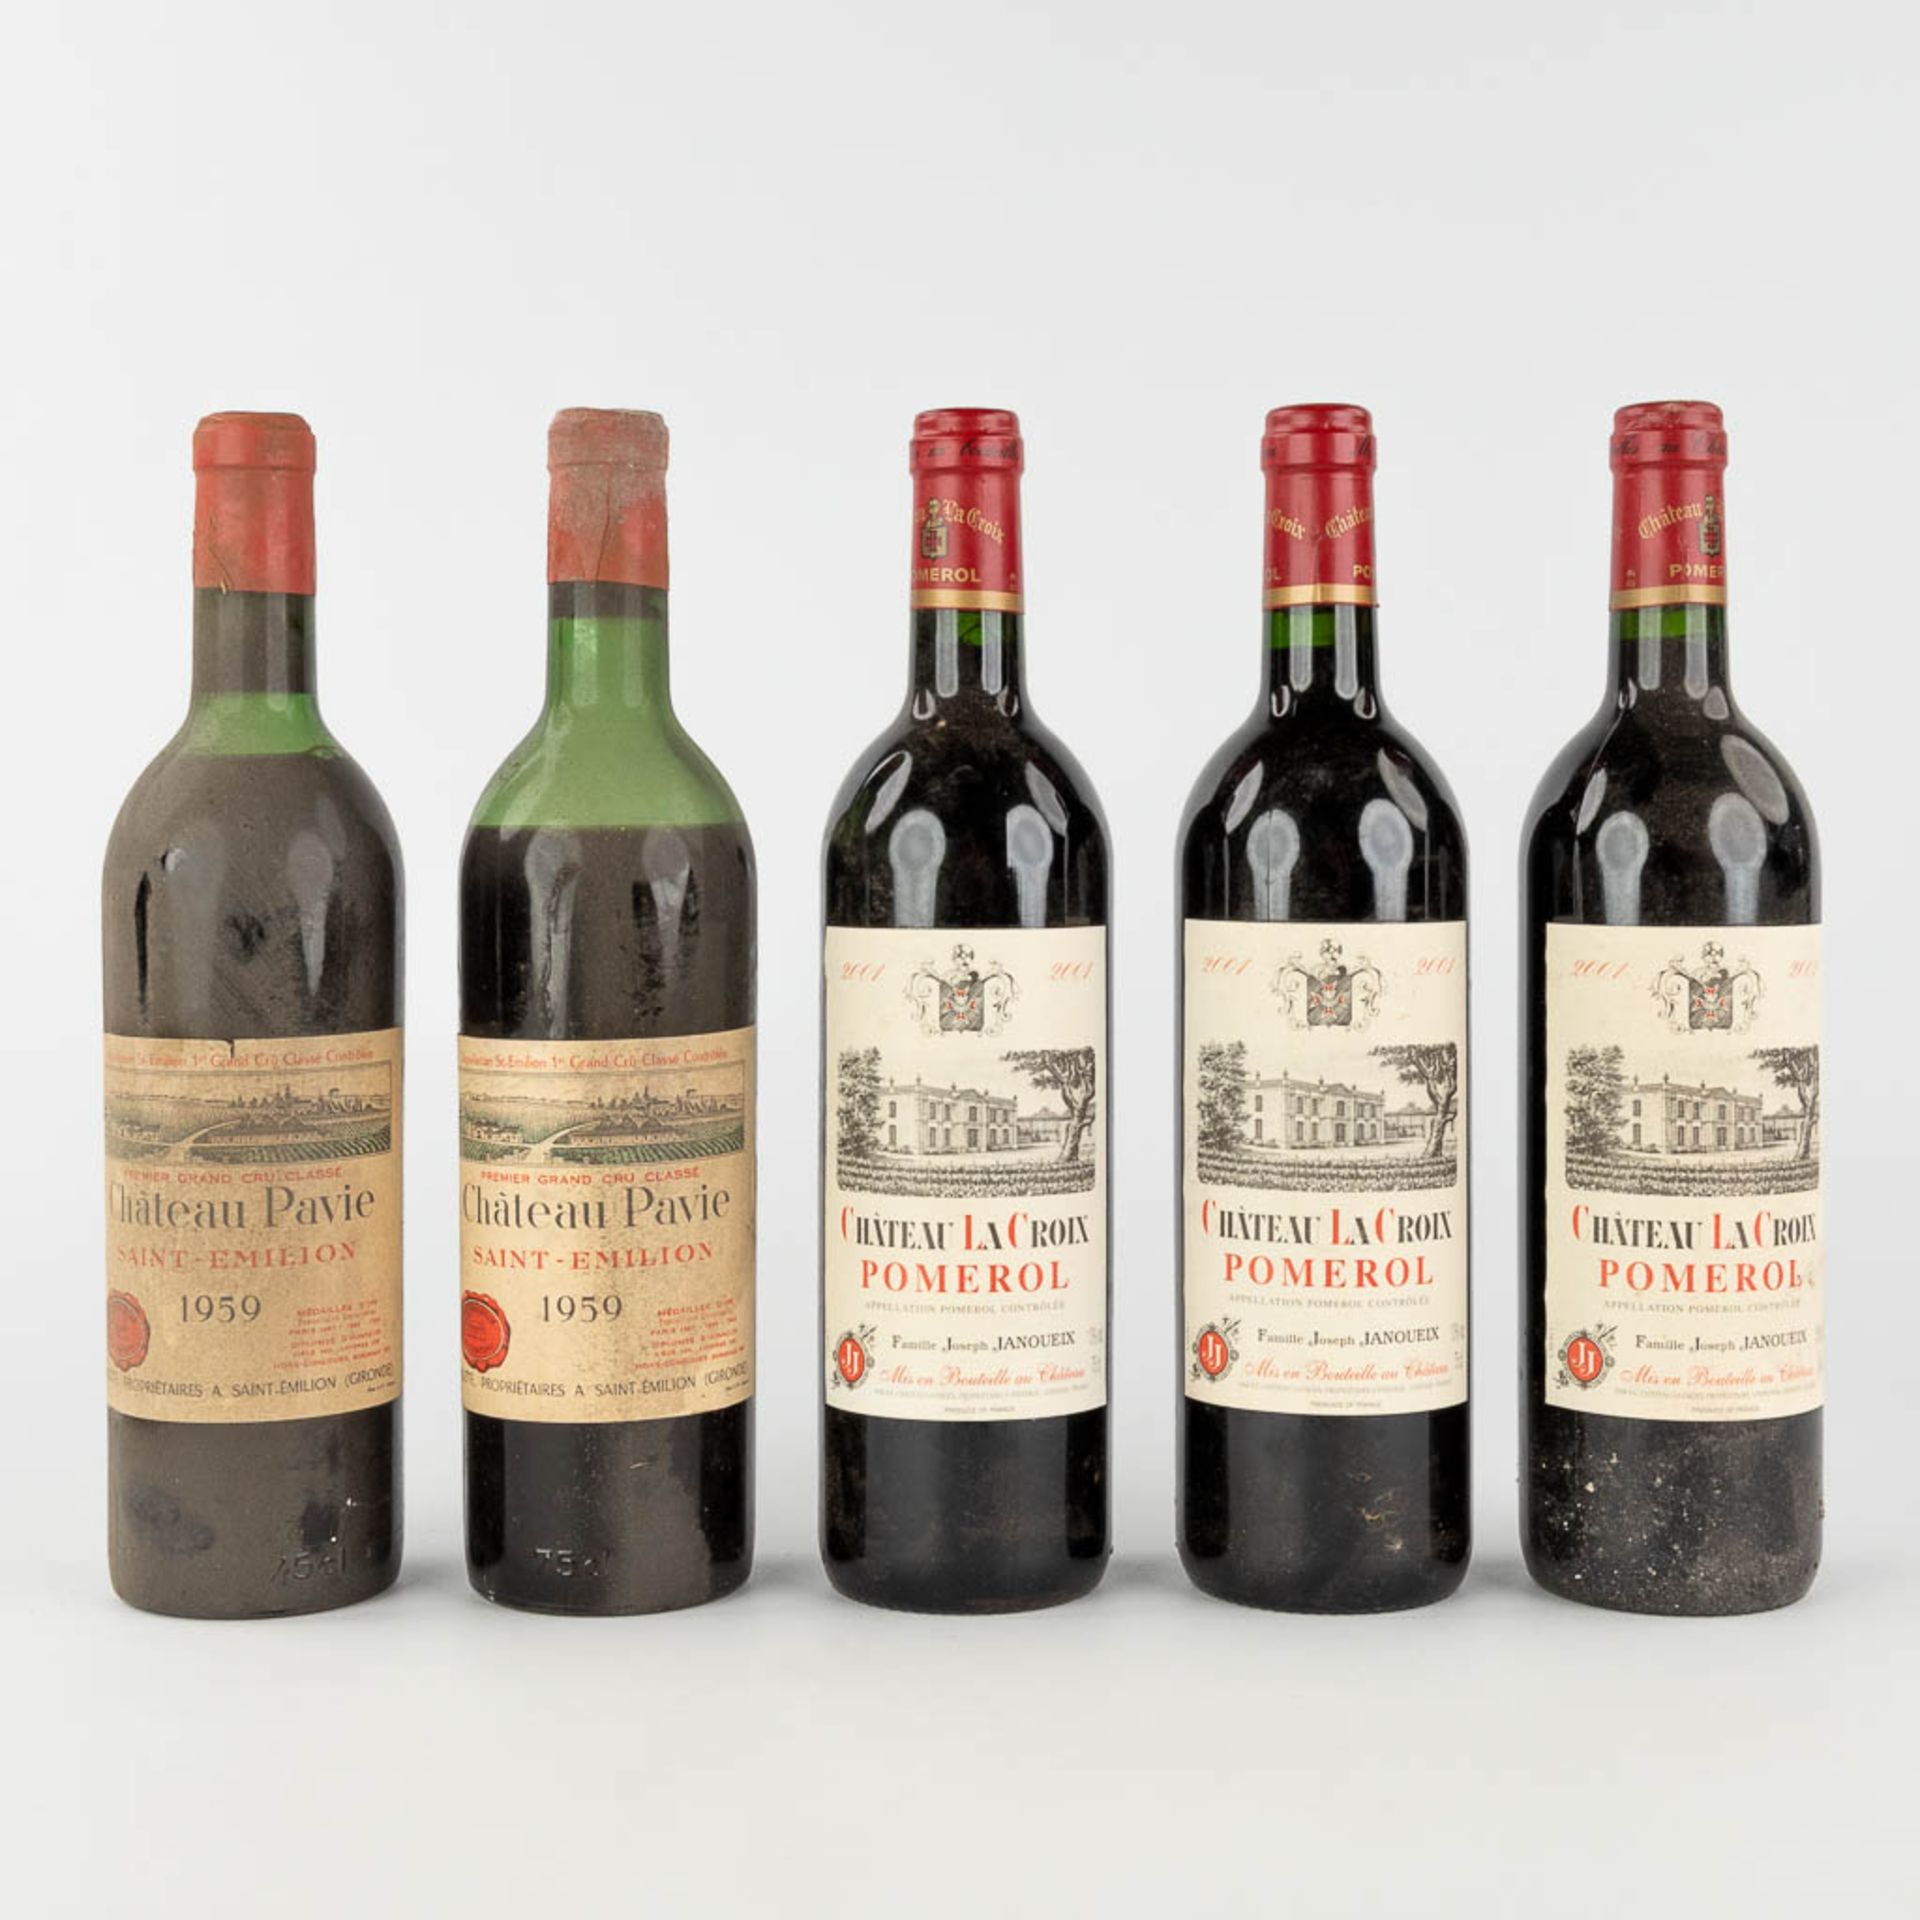 Chateau La Croix Pomerol 2001, 3 bottles & Chateau Pavie 1959, 2 bottles